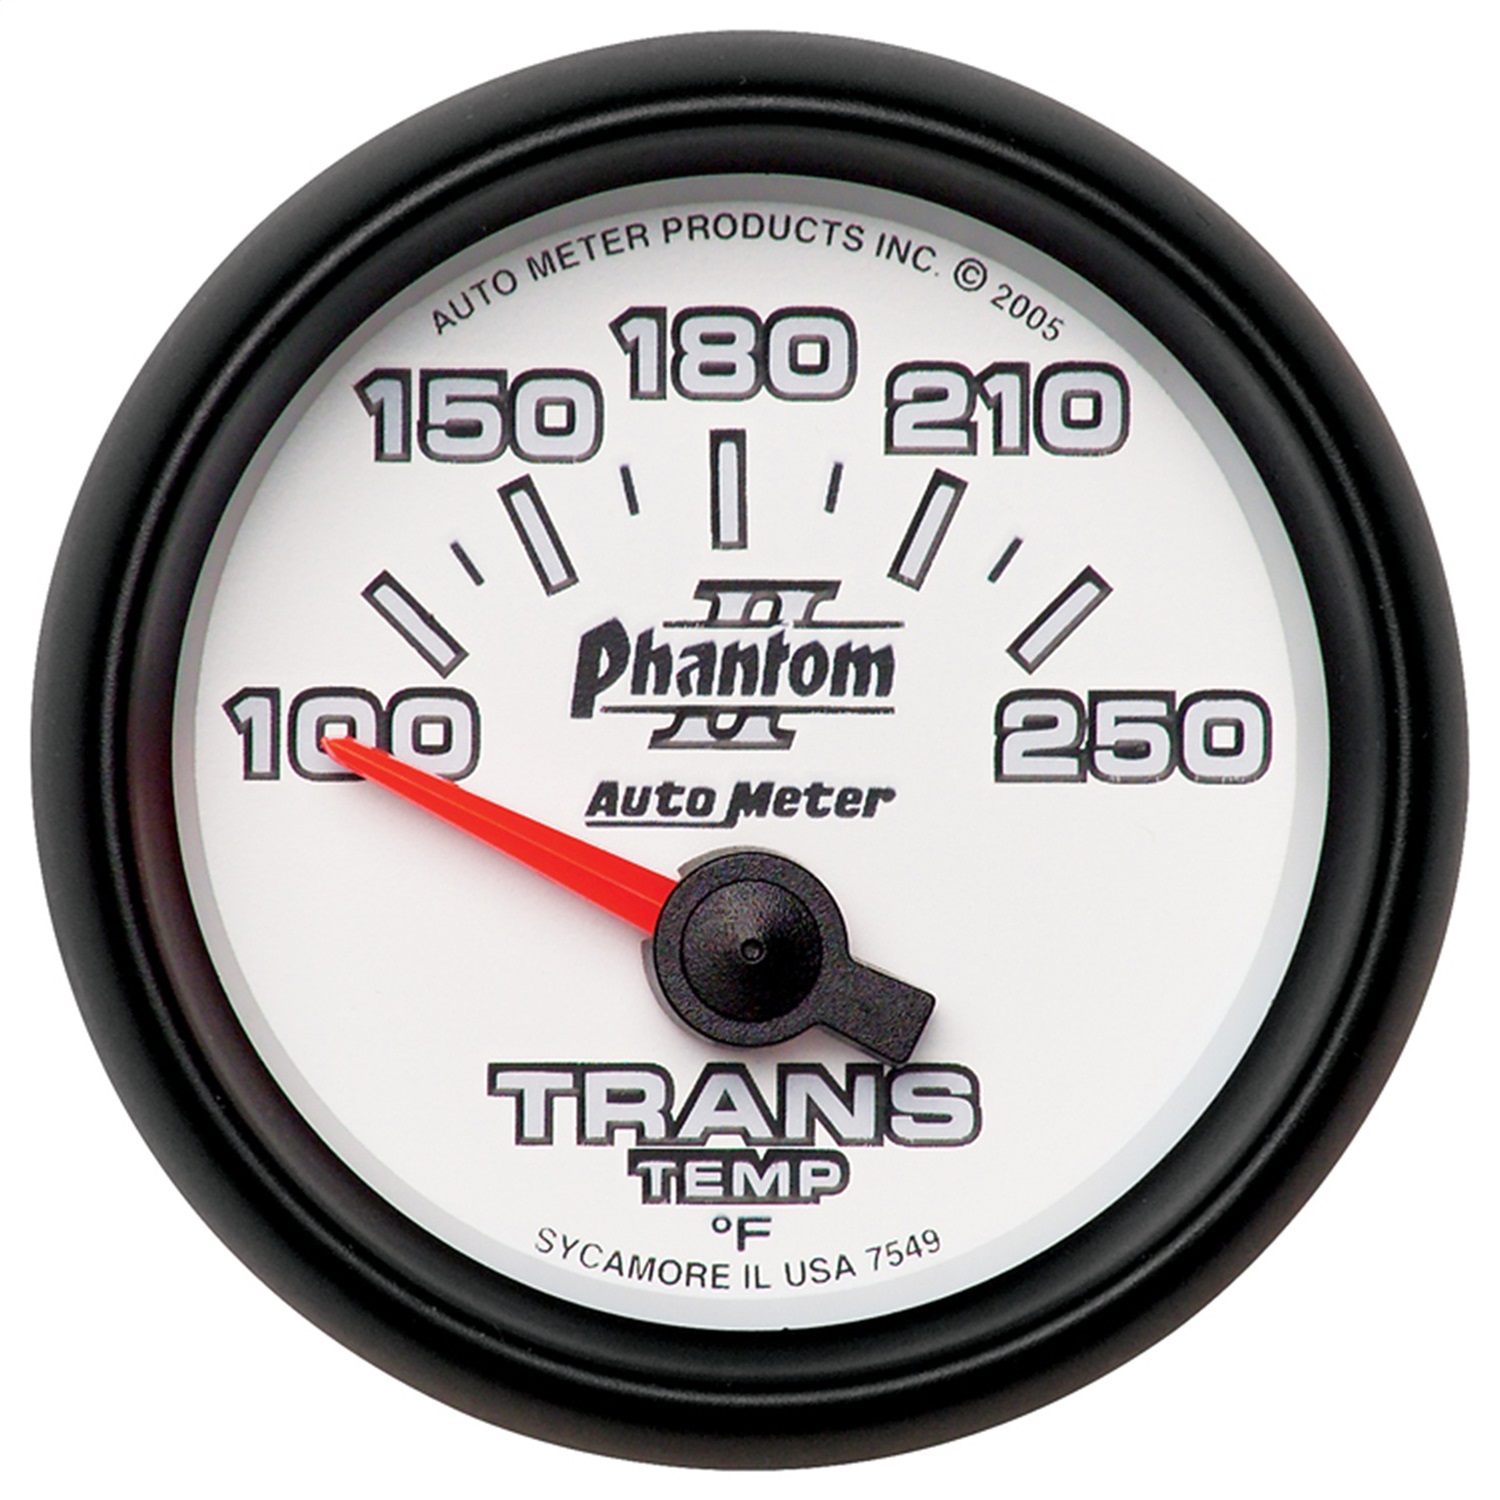 Auto Meter Auto Meter 7549 Phantom II; Electric Transmission Temperature Gauge